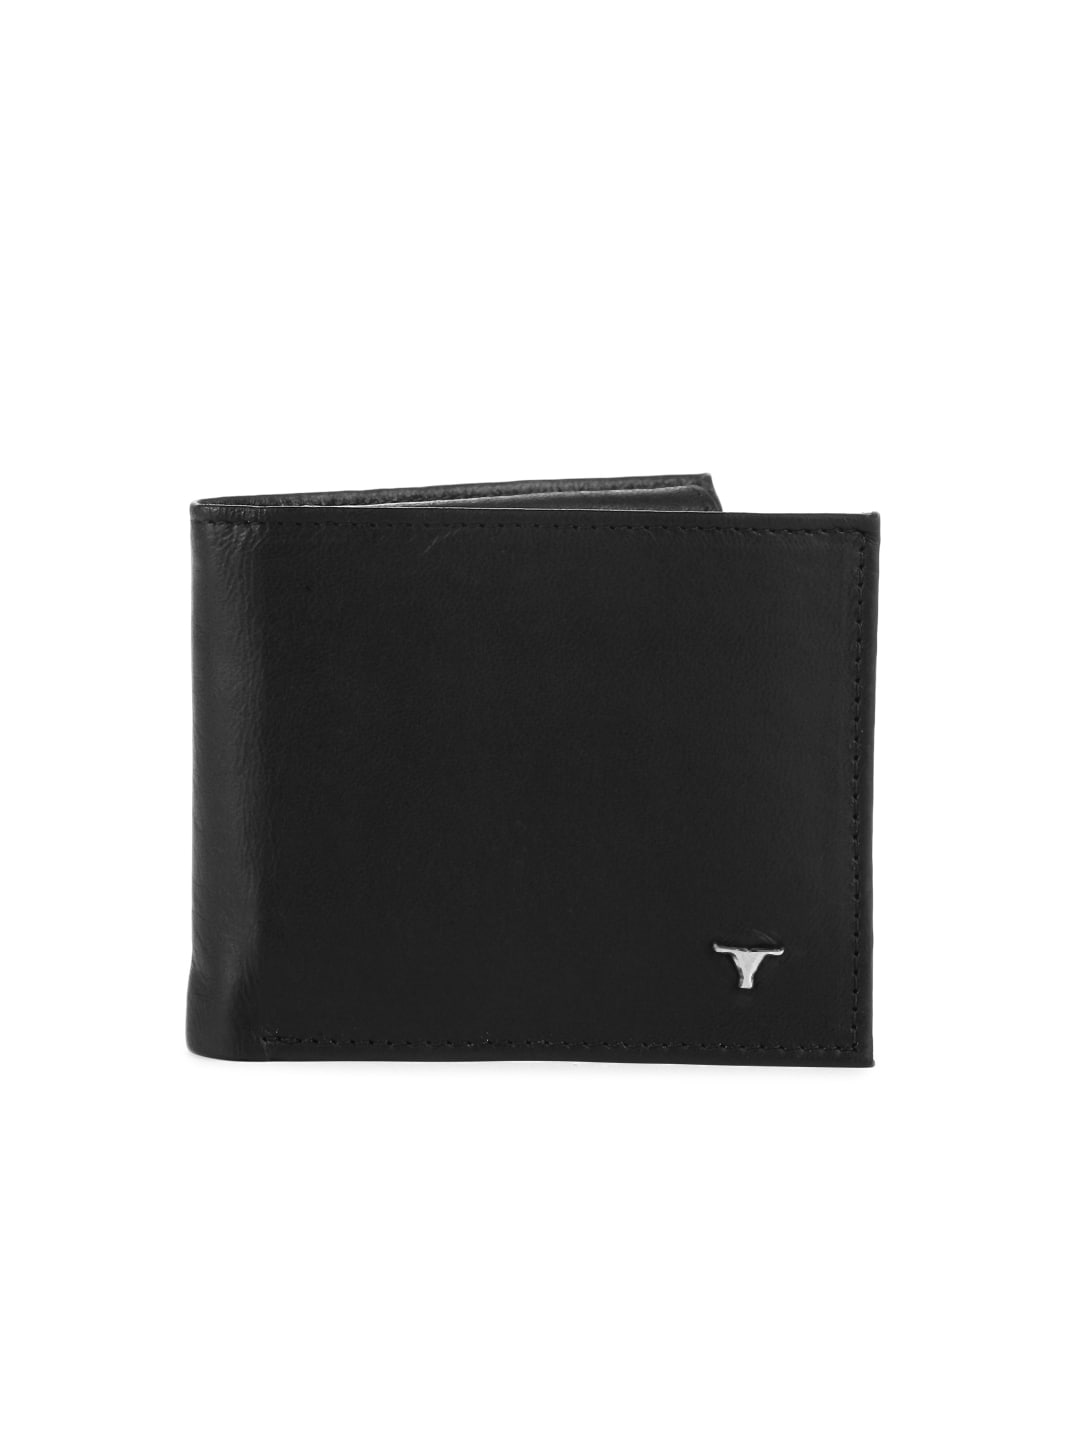 Bulchee Men Black Leather Wallet